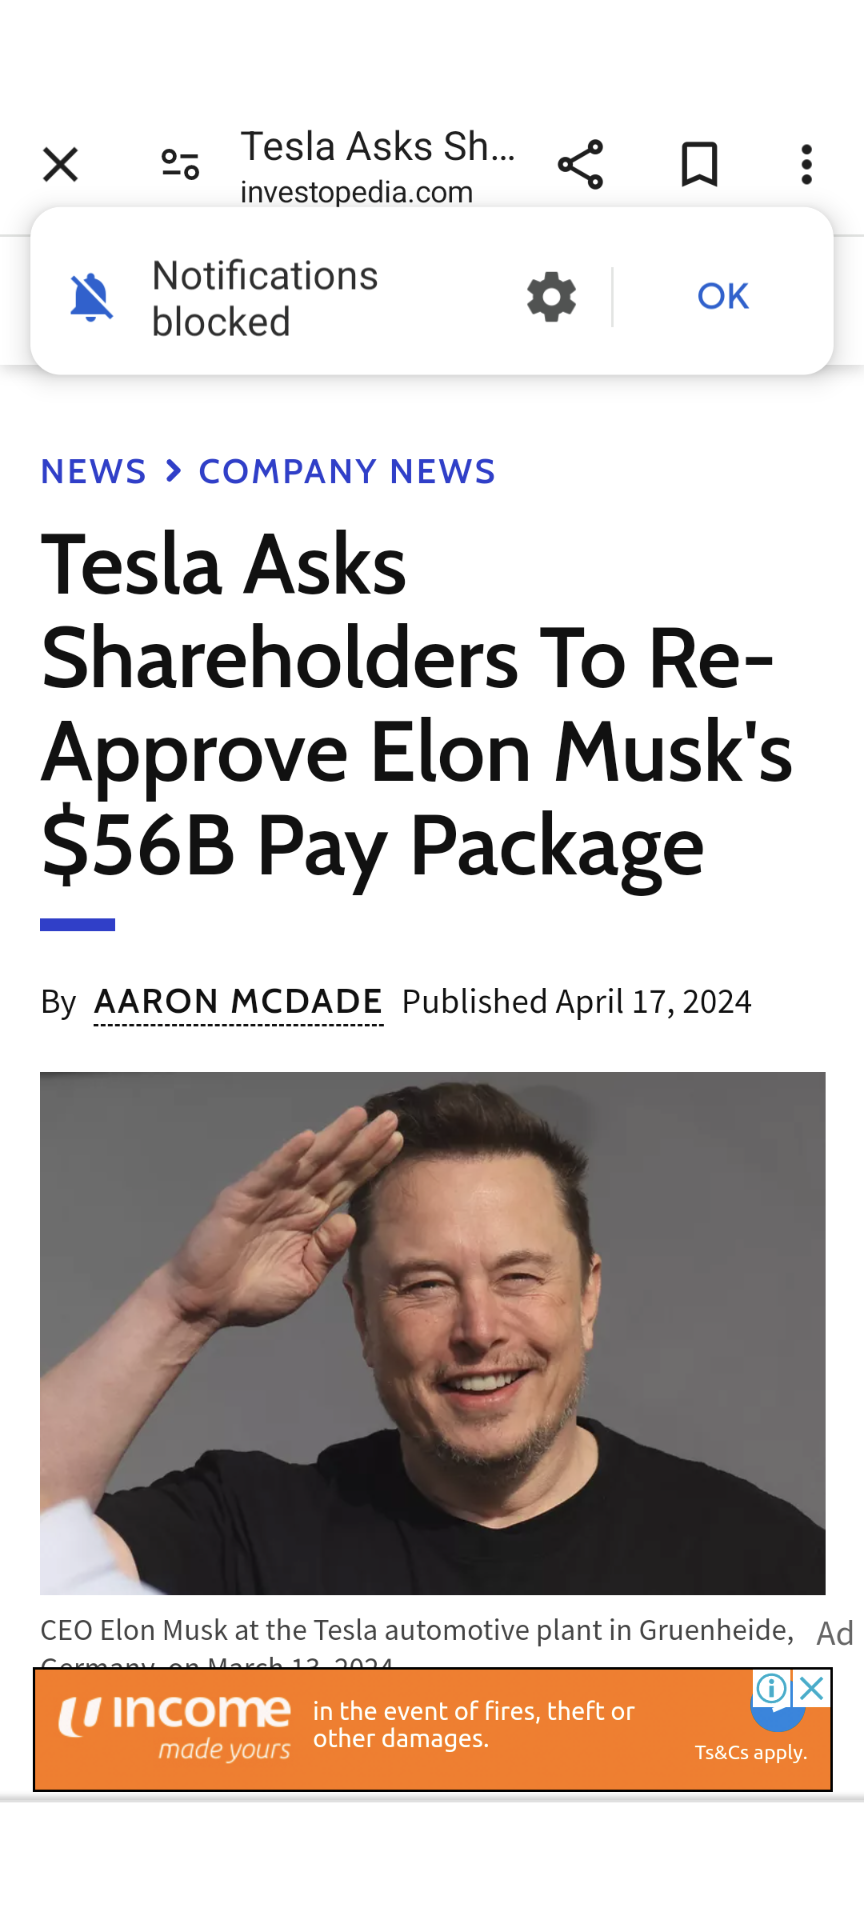 $特斯拉 (TSLA.US)$ R 你为六月的投票做好了准备。Elon 向那些投赞成票的人致敬。见下文。哈哈 [链接: 特斯拉要求股东重新批准埃隆·马斯克的560亿美元薪酬待遇]